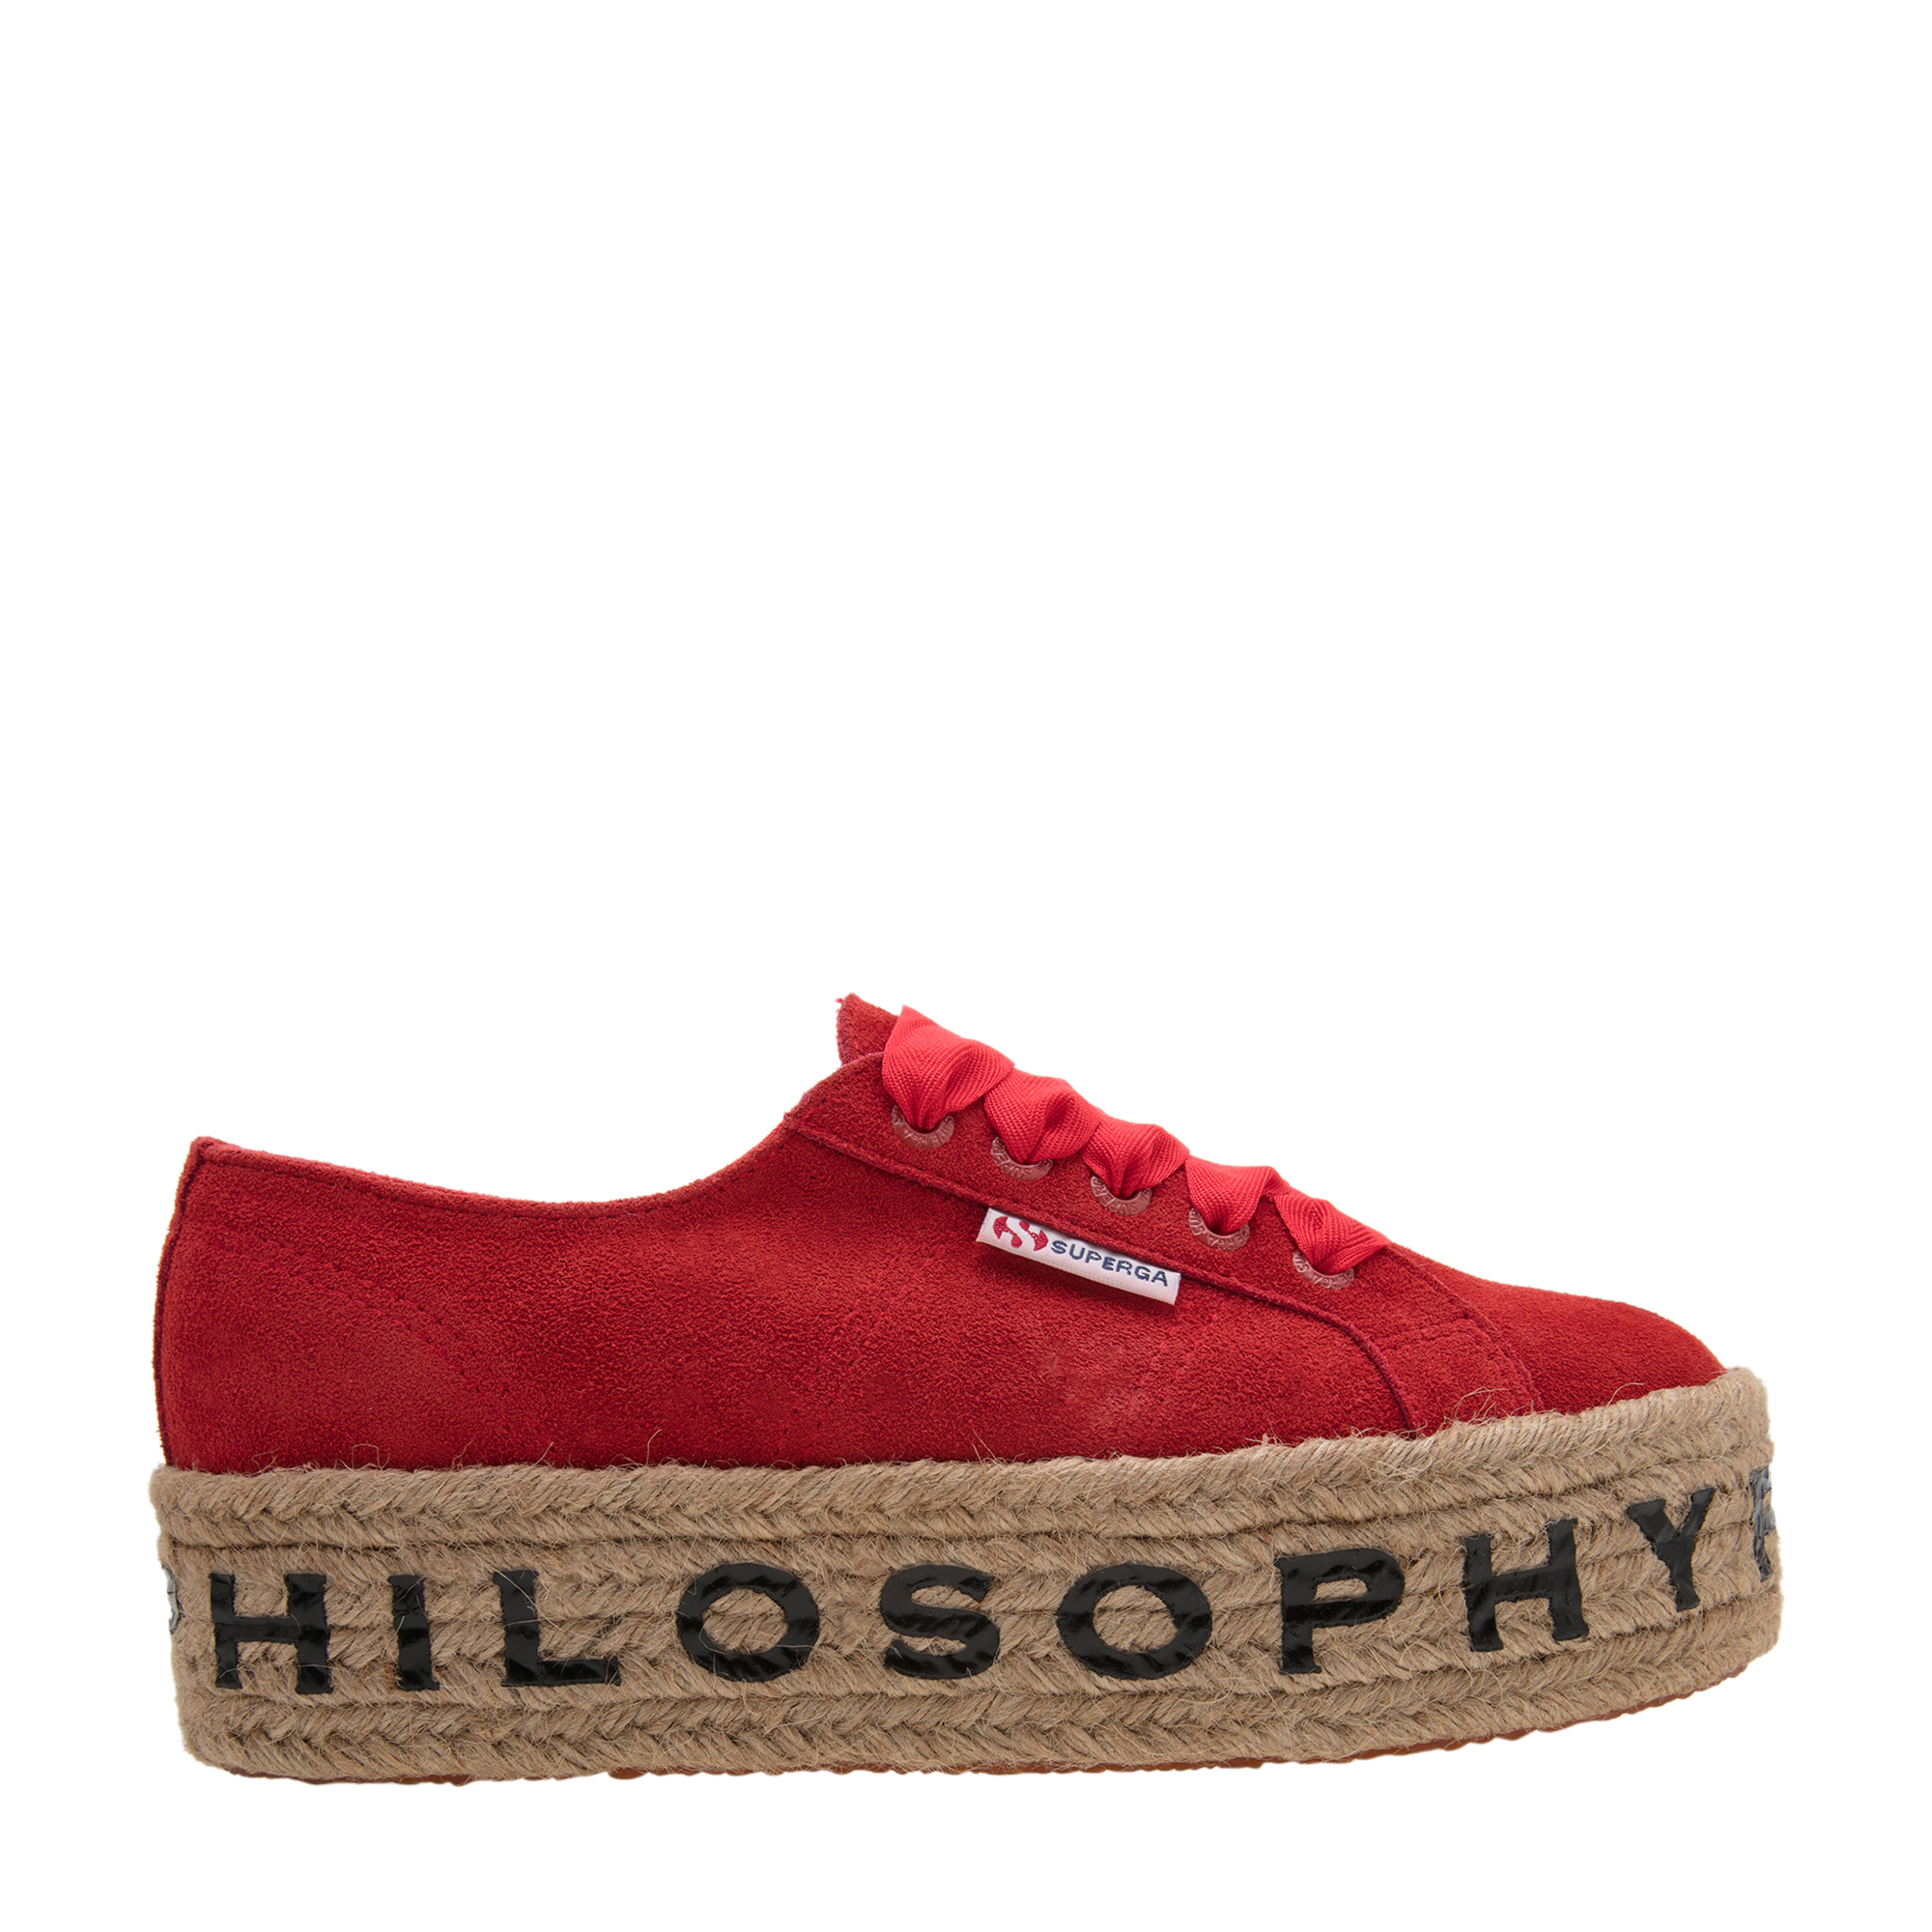 X Philosophy suede sneakers.